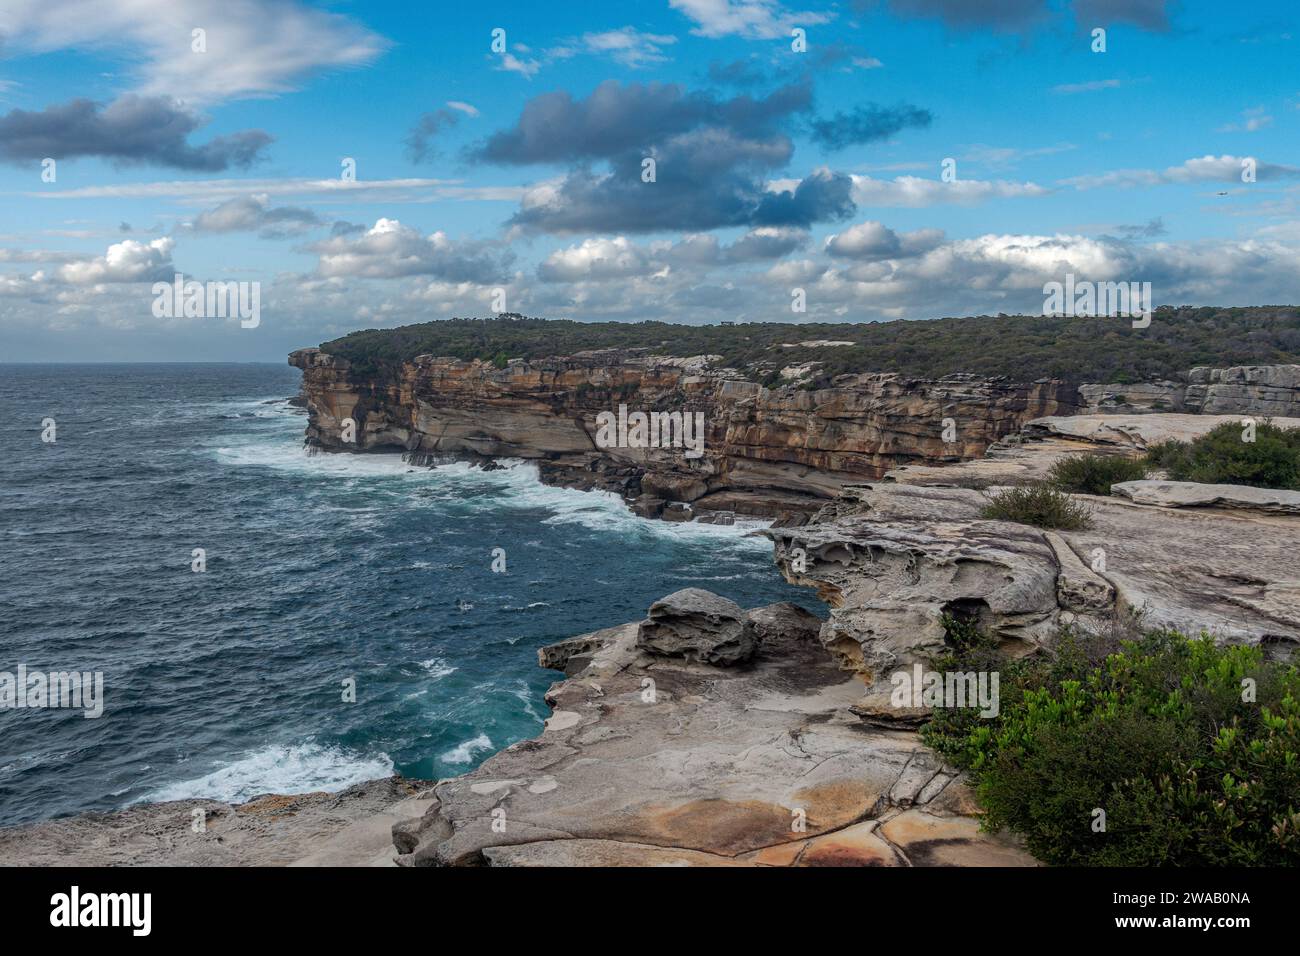 Vista panoramica delle scogliere costiere e del mare tra Maroubra Beach e Malabar Beach, Sydney, Australia. Spettacolari formazioni nuvolose sul cielo blu. Foto Stock